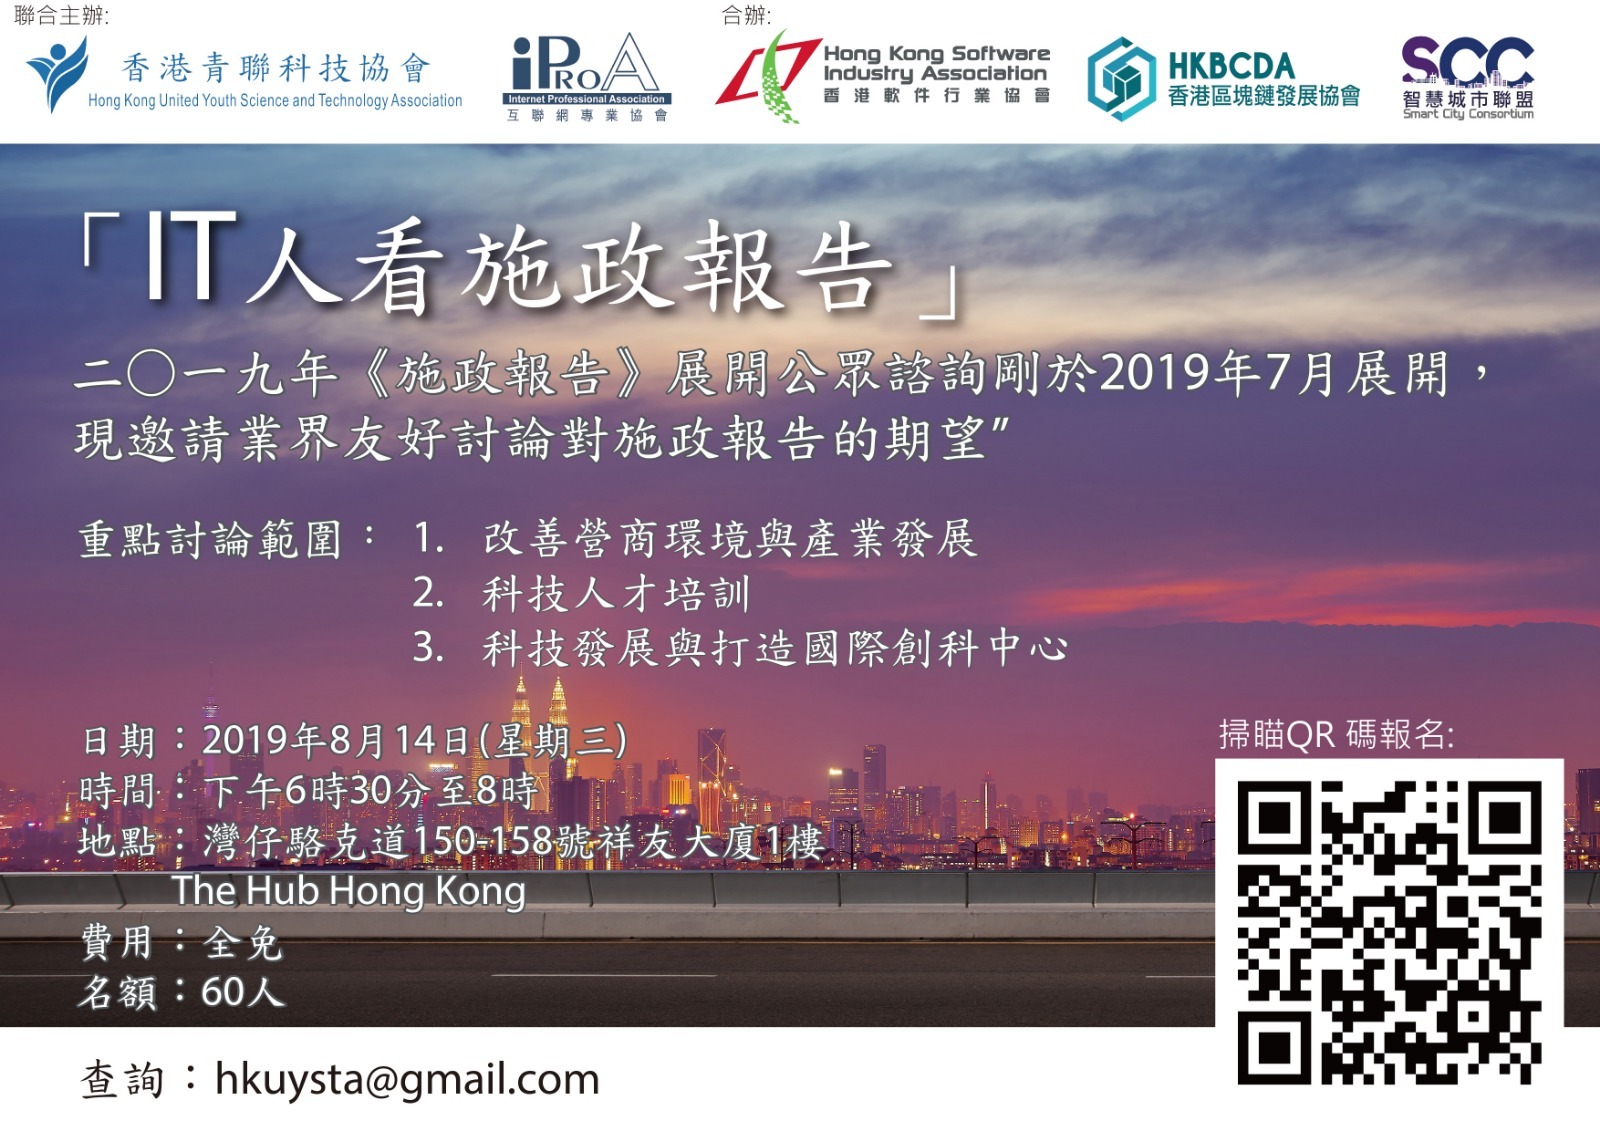 Smart@Hong Kong Conference